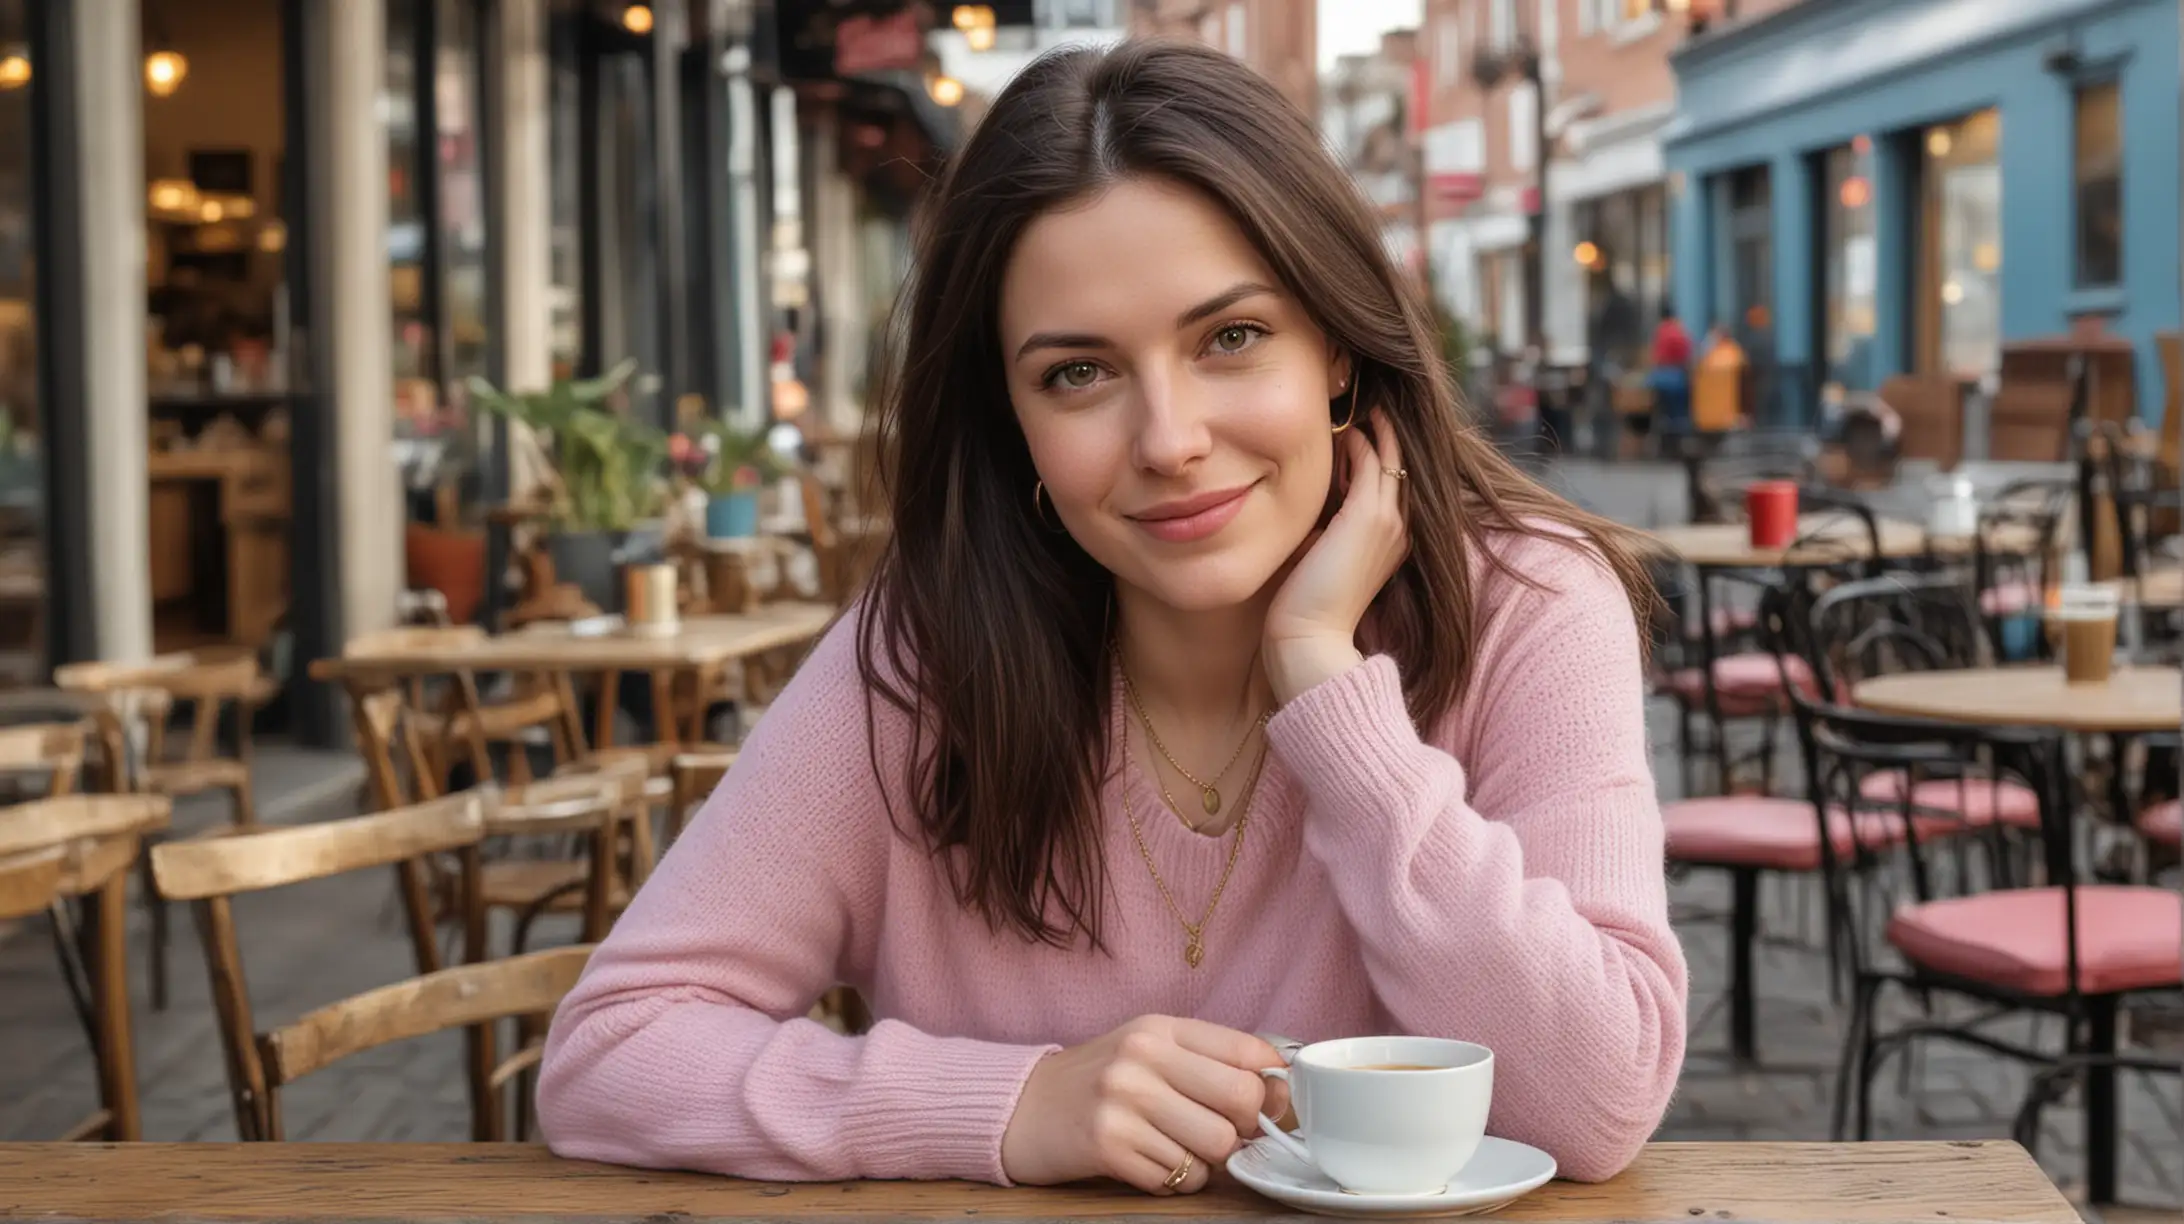 Young Woman Enjoying Tea at Urban Cafe